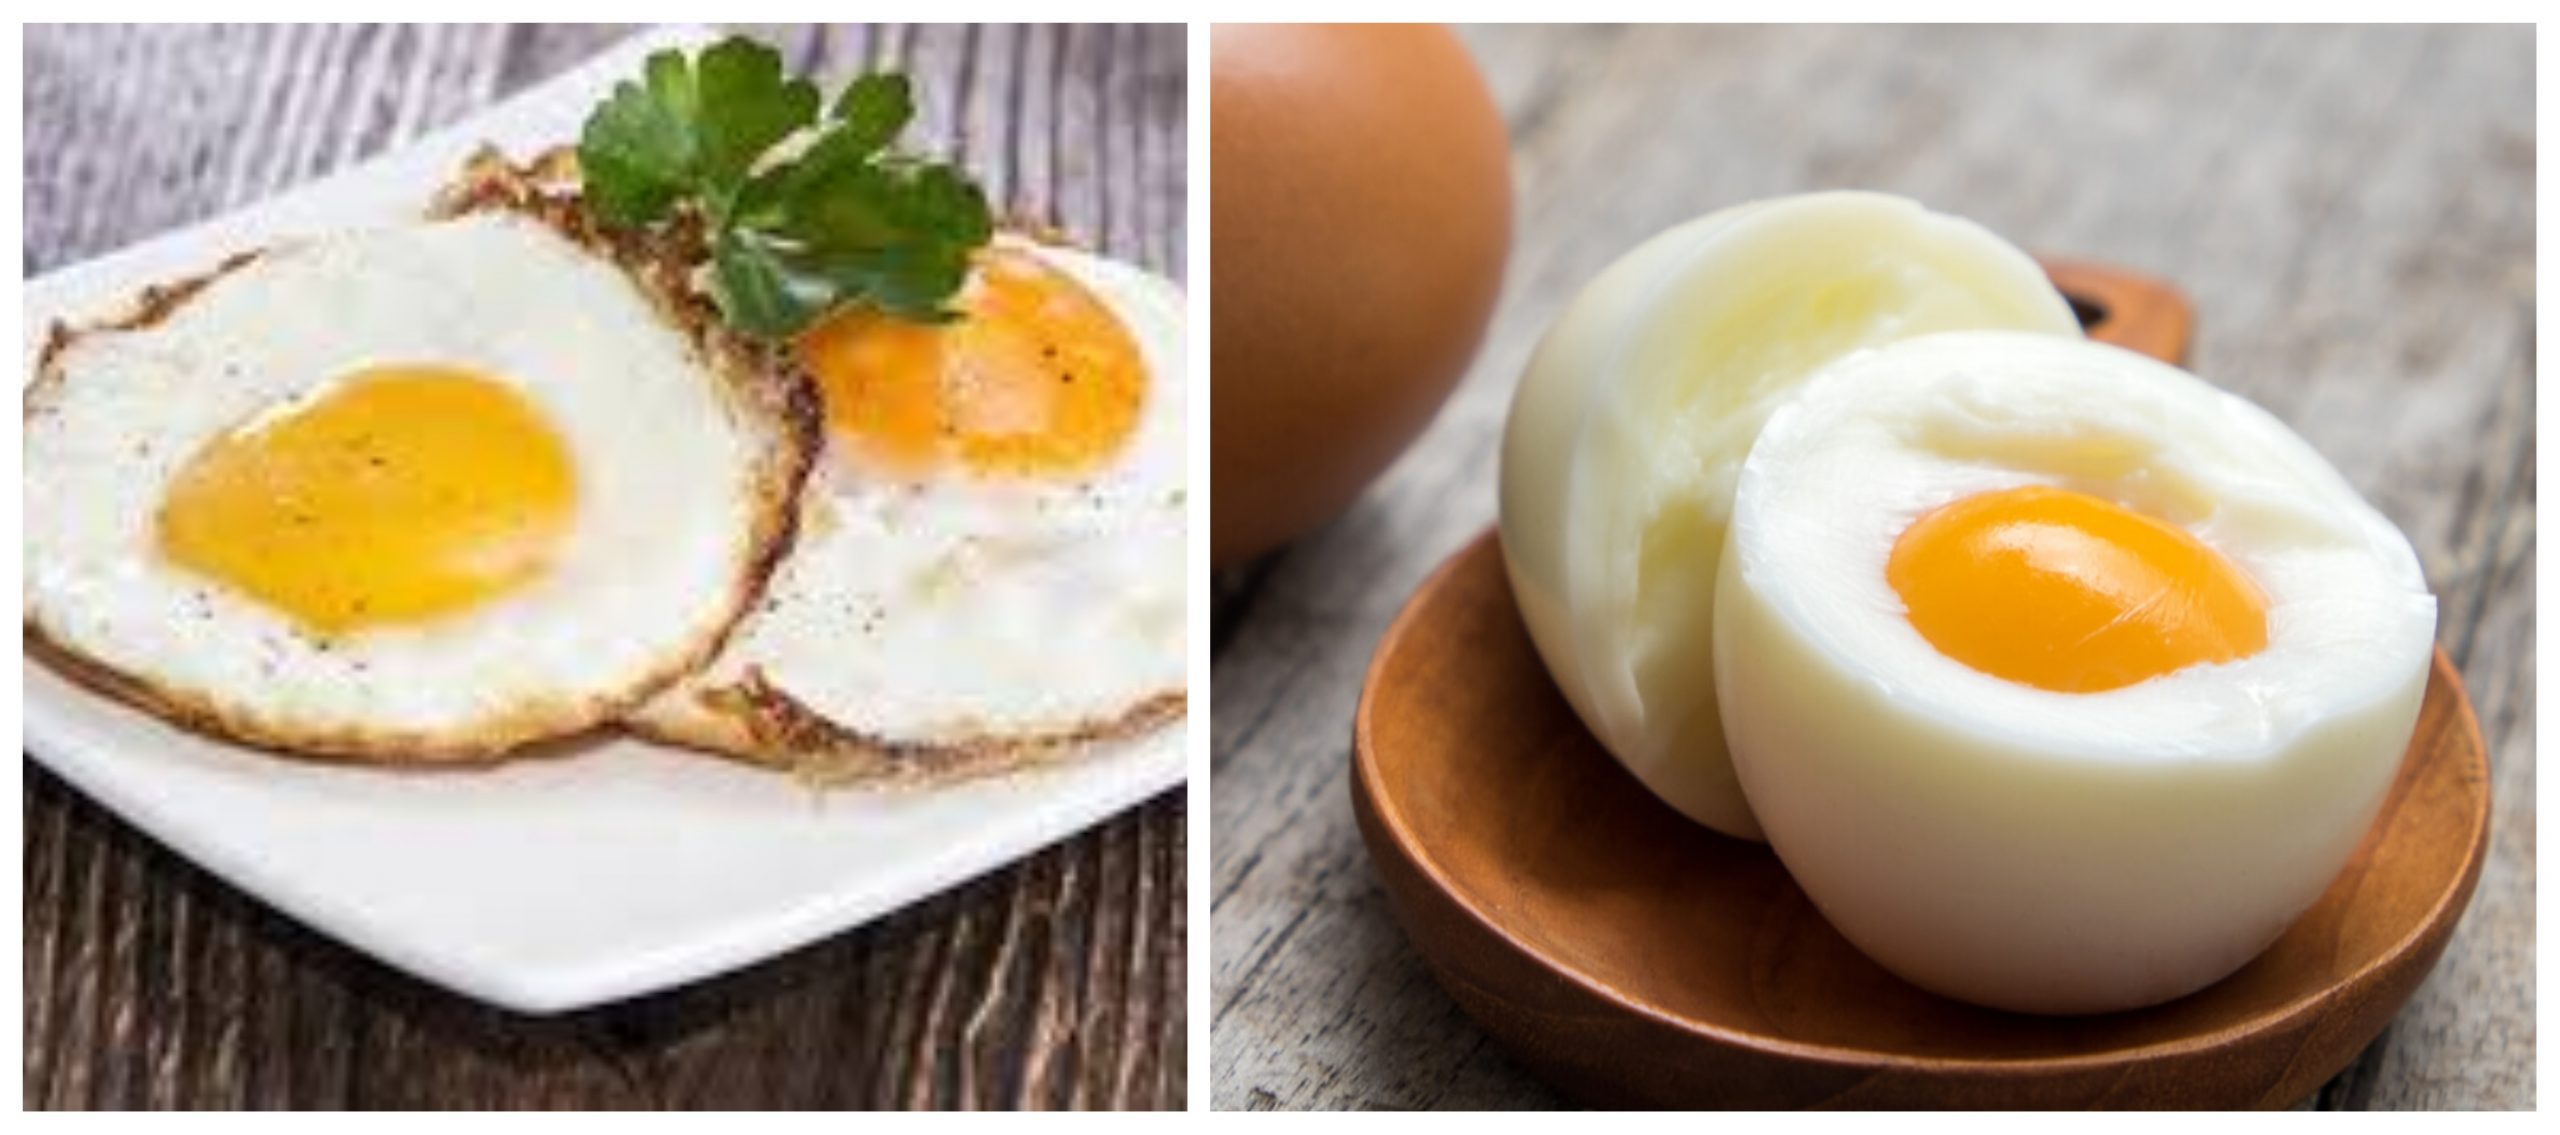 الفوائد الصحية لتناول البيض.. طعام خارق لا مثيل له